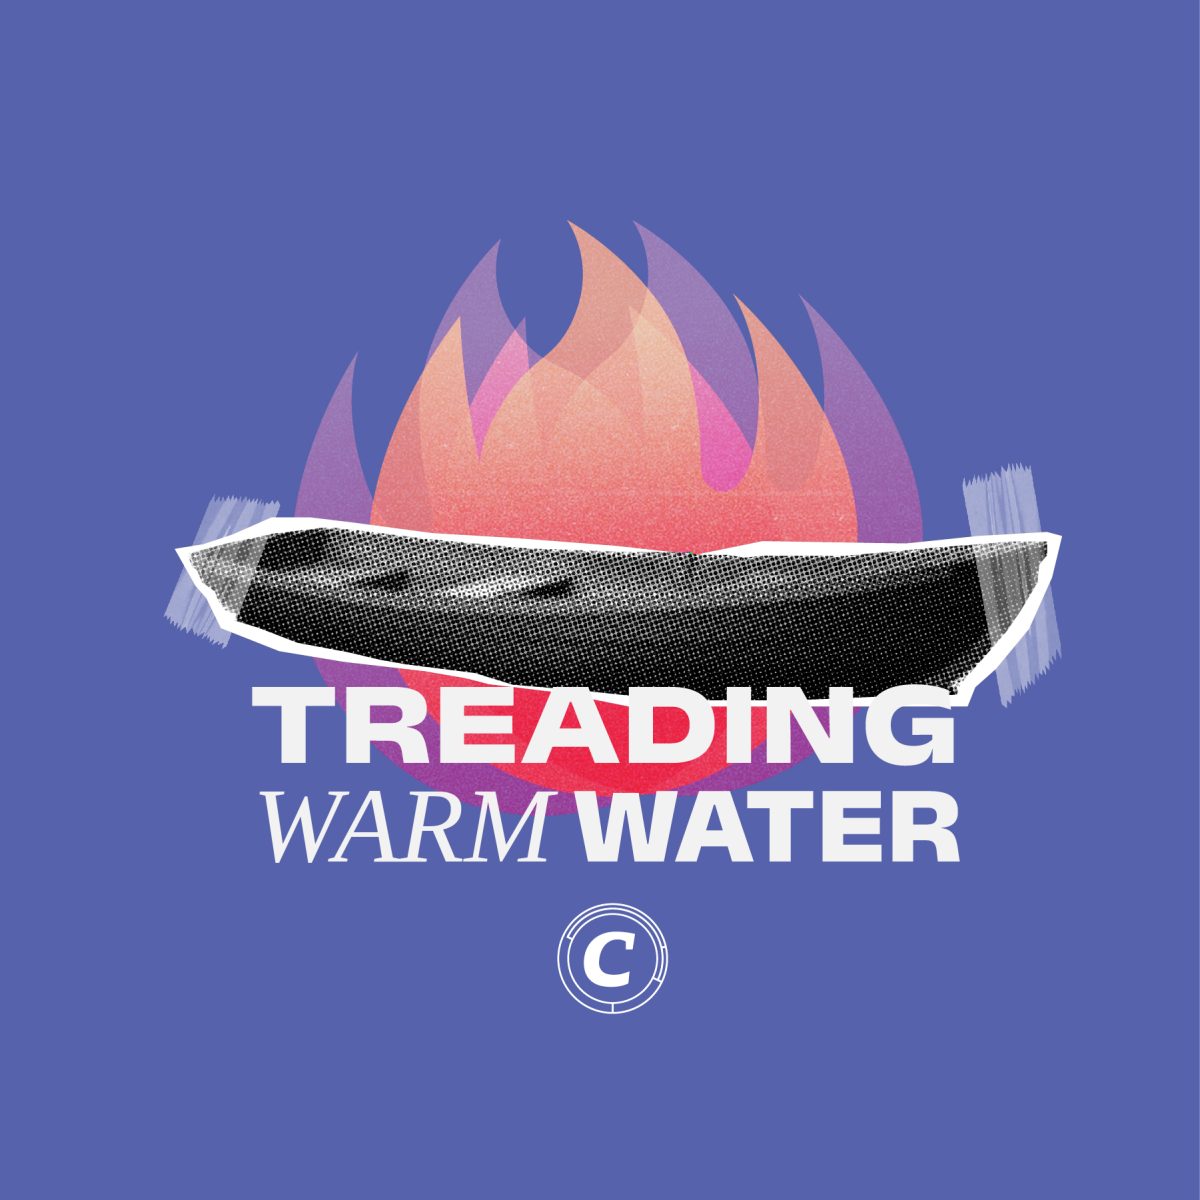 Treading Warm Water: Toast